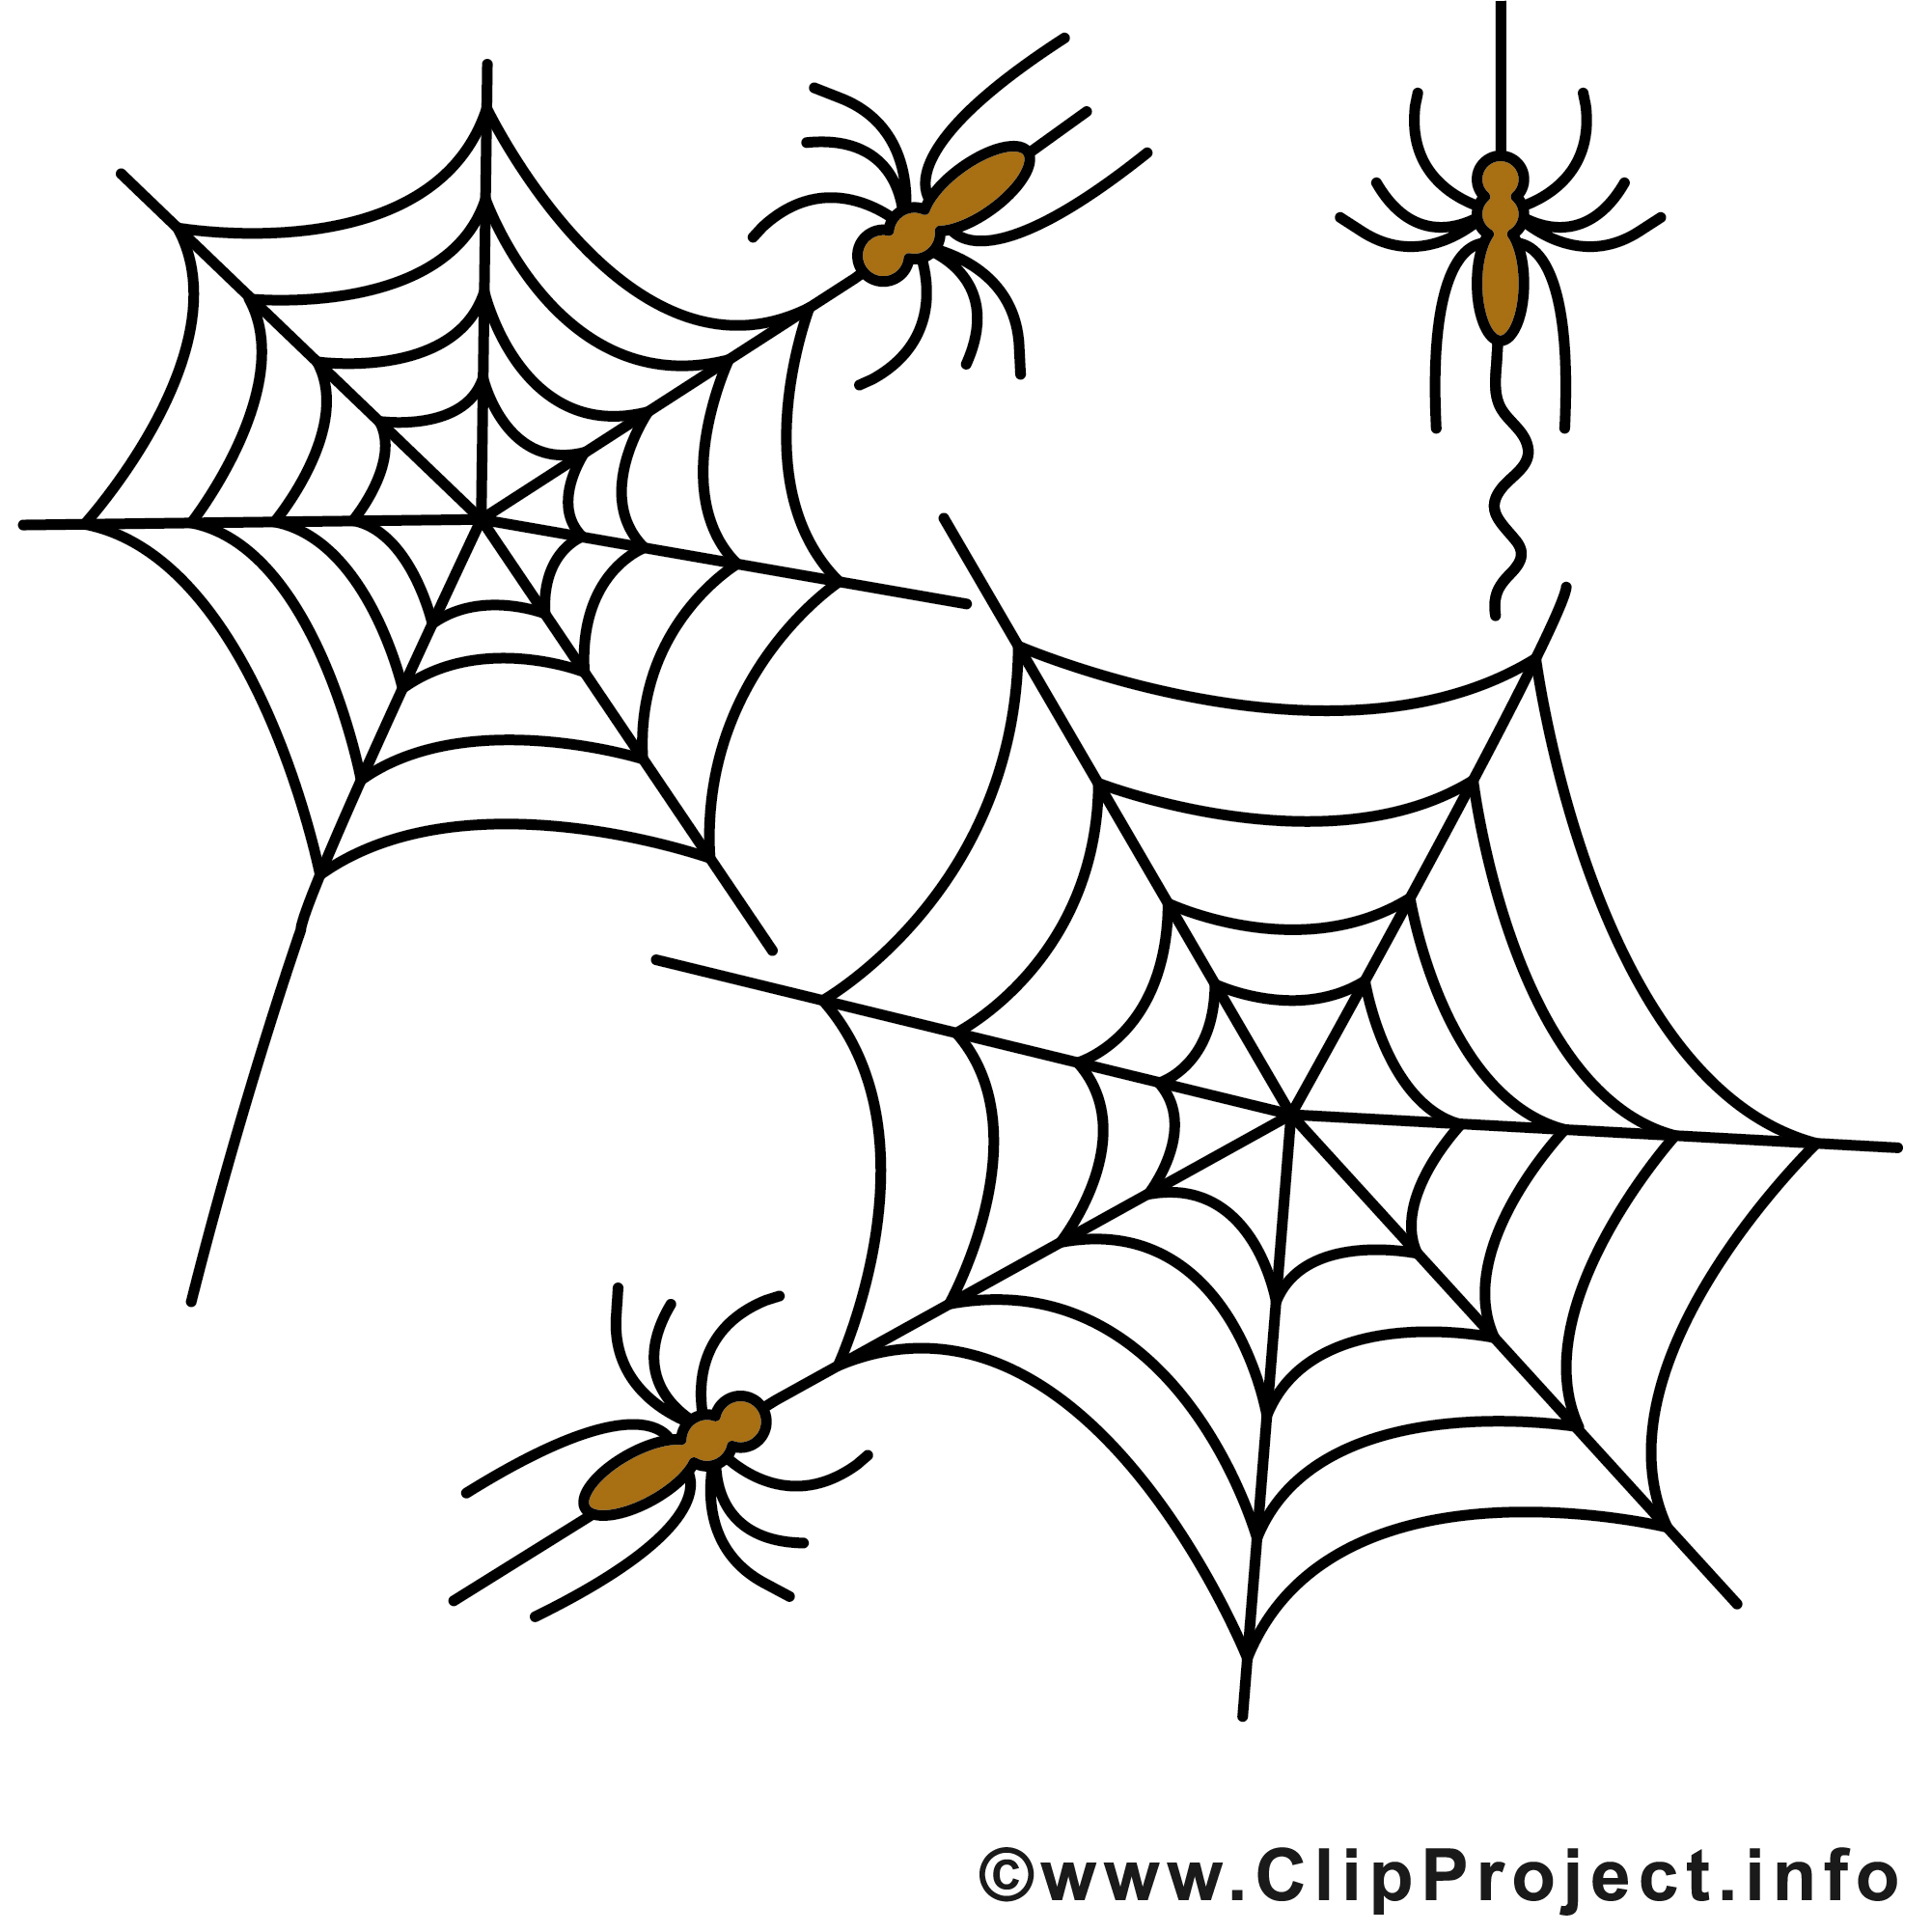 Toile d'araignée Halloween image à télécharger gratuite - Halloween